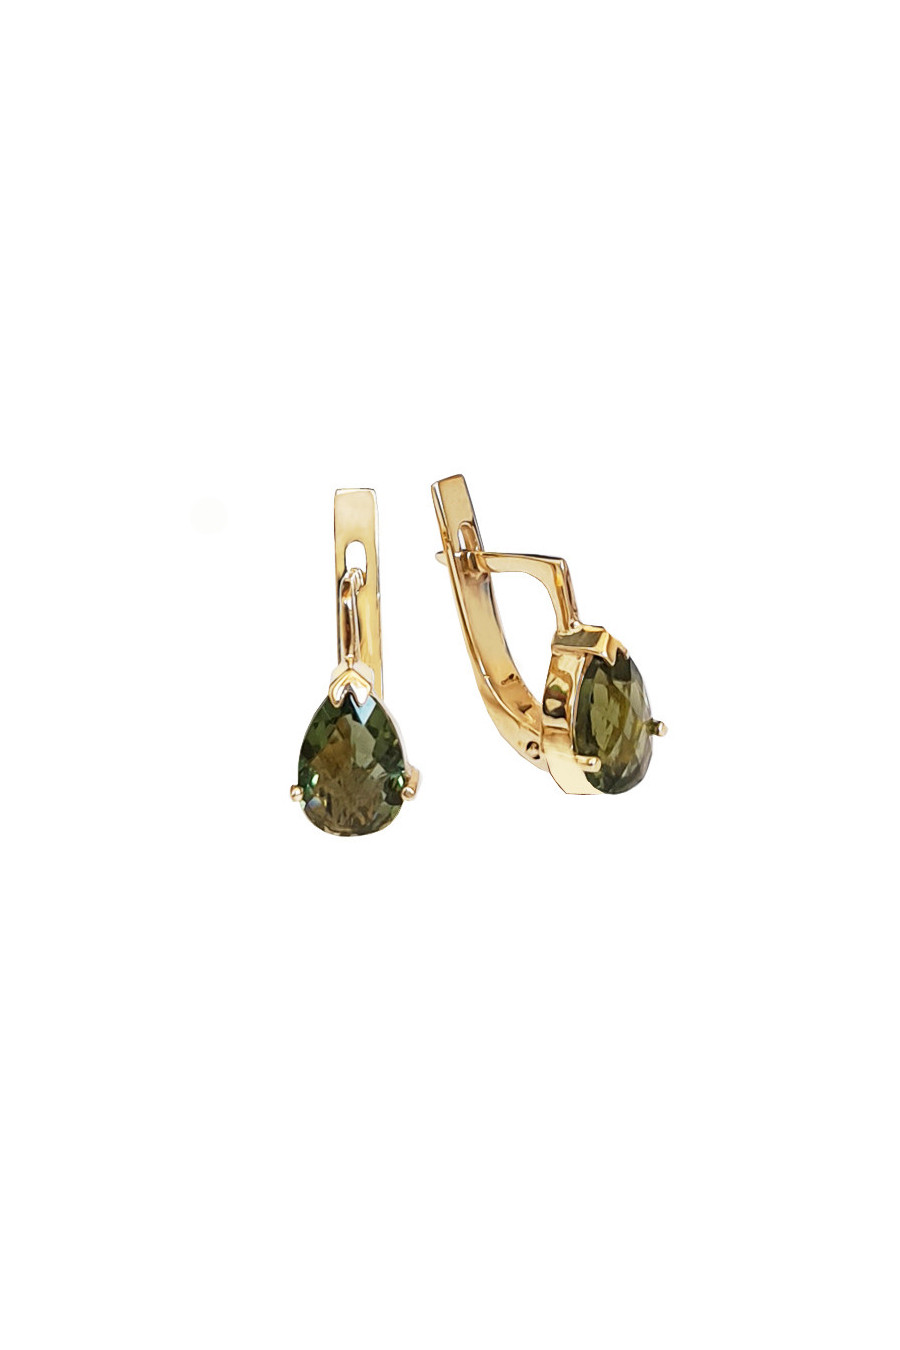 Gold earrings, moldavite